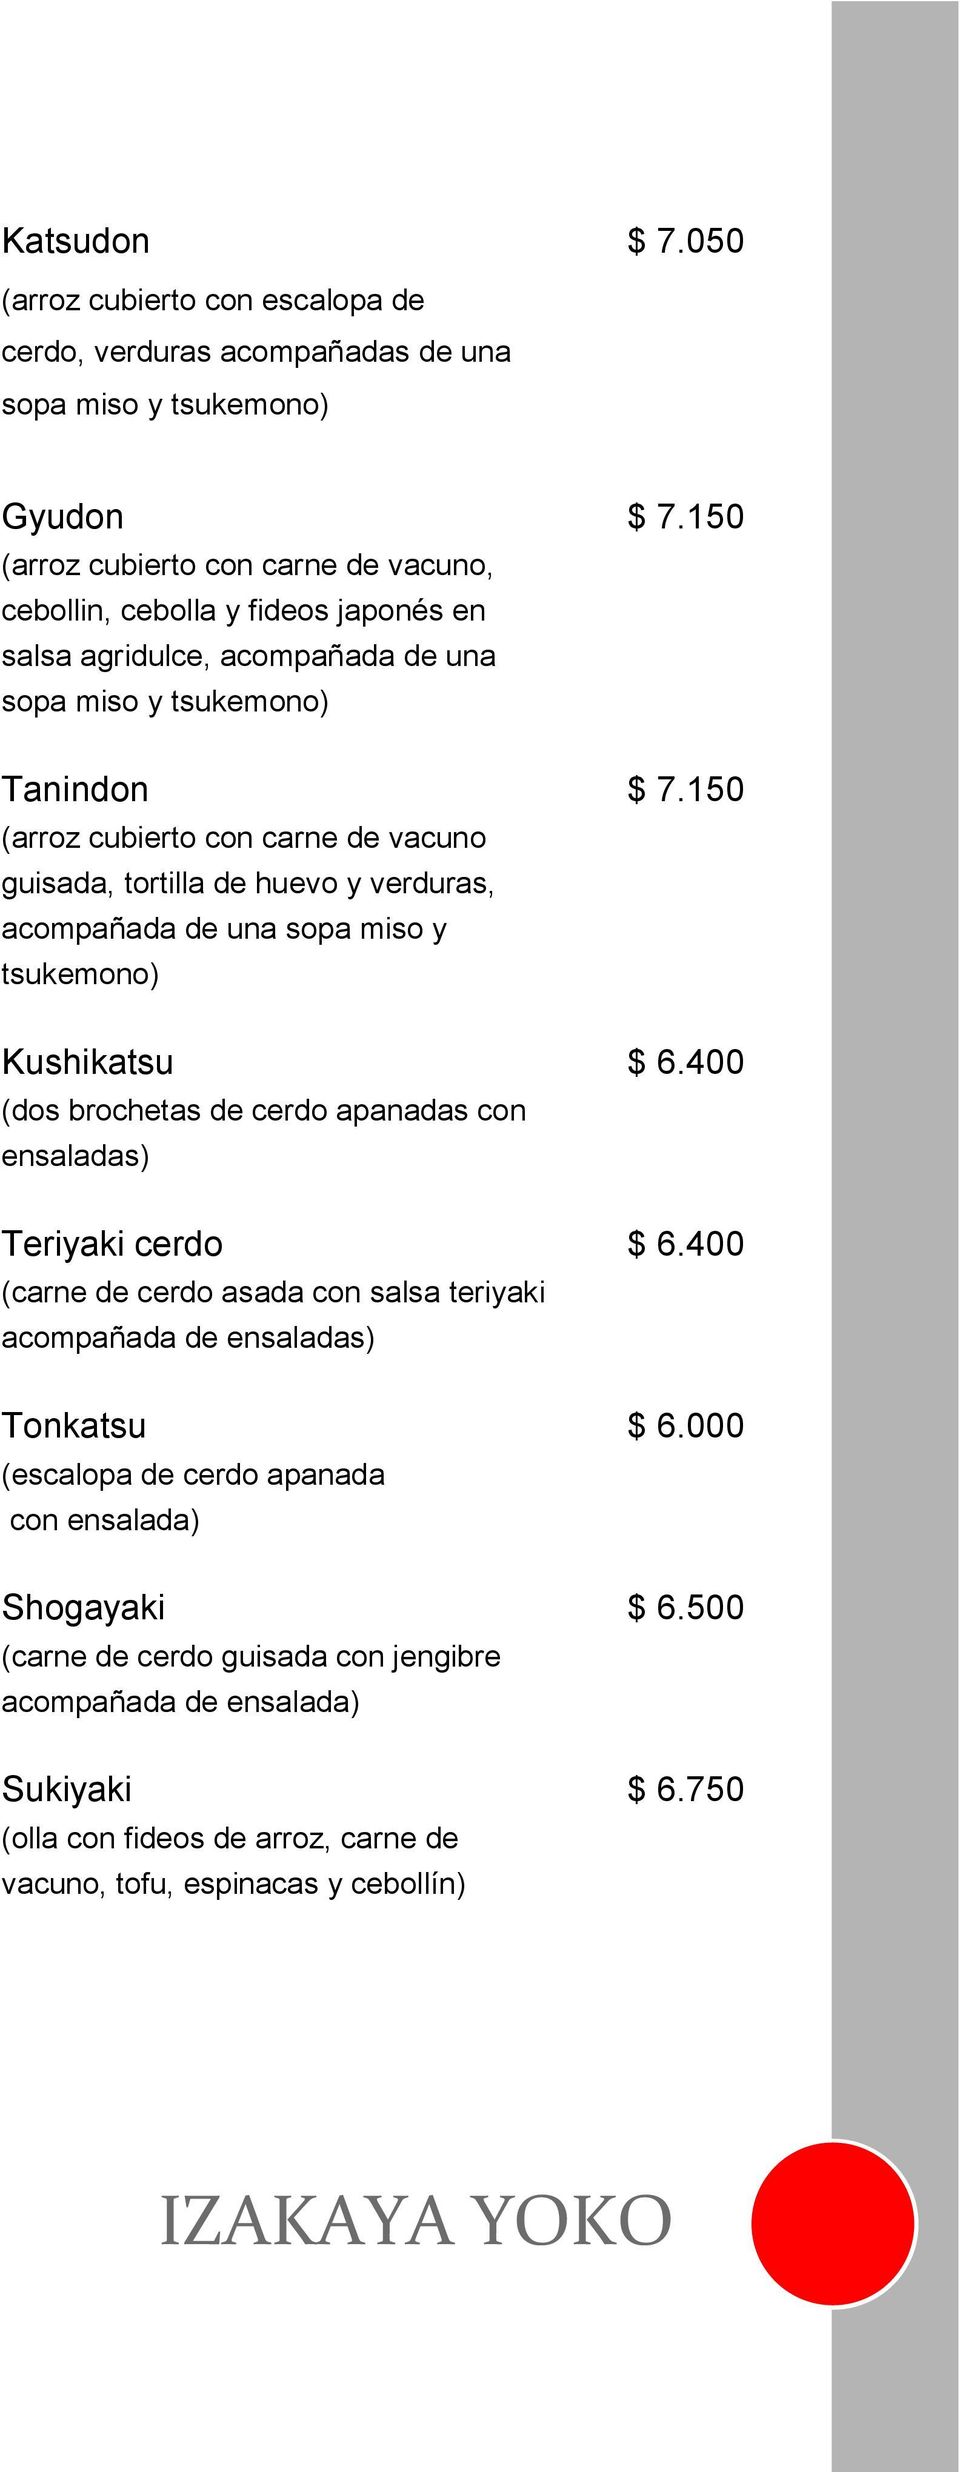 150 (arroz cubierto con carne de vacuno guisada, tortilla de huevo y verduras, acompañada de una sopa miso y tsukemono) Kushikatsu $ 6.